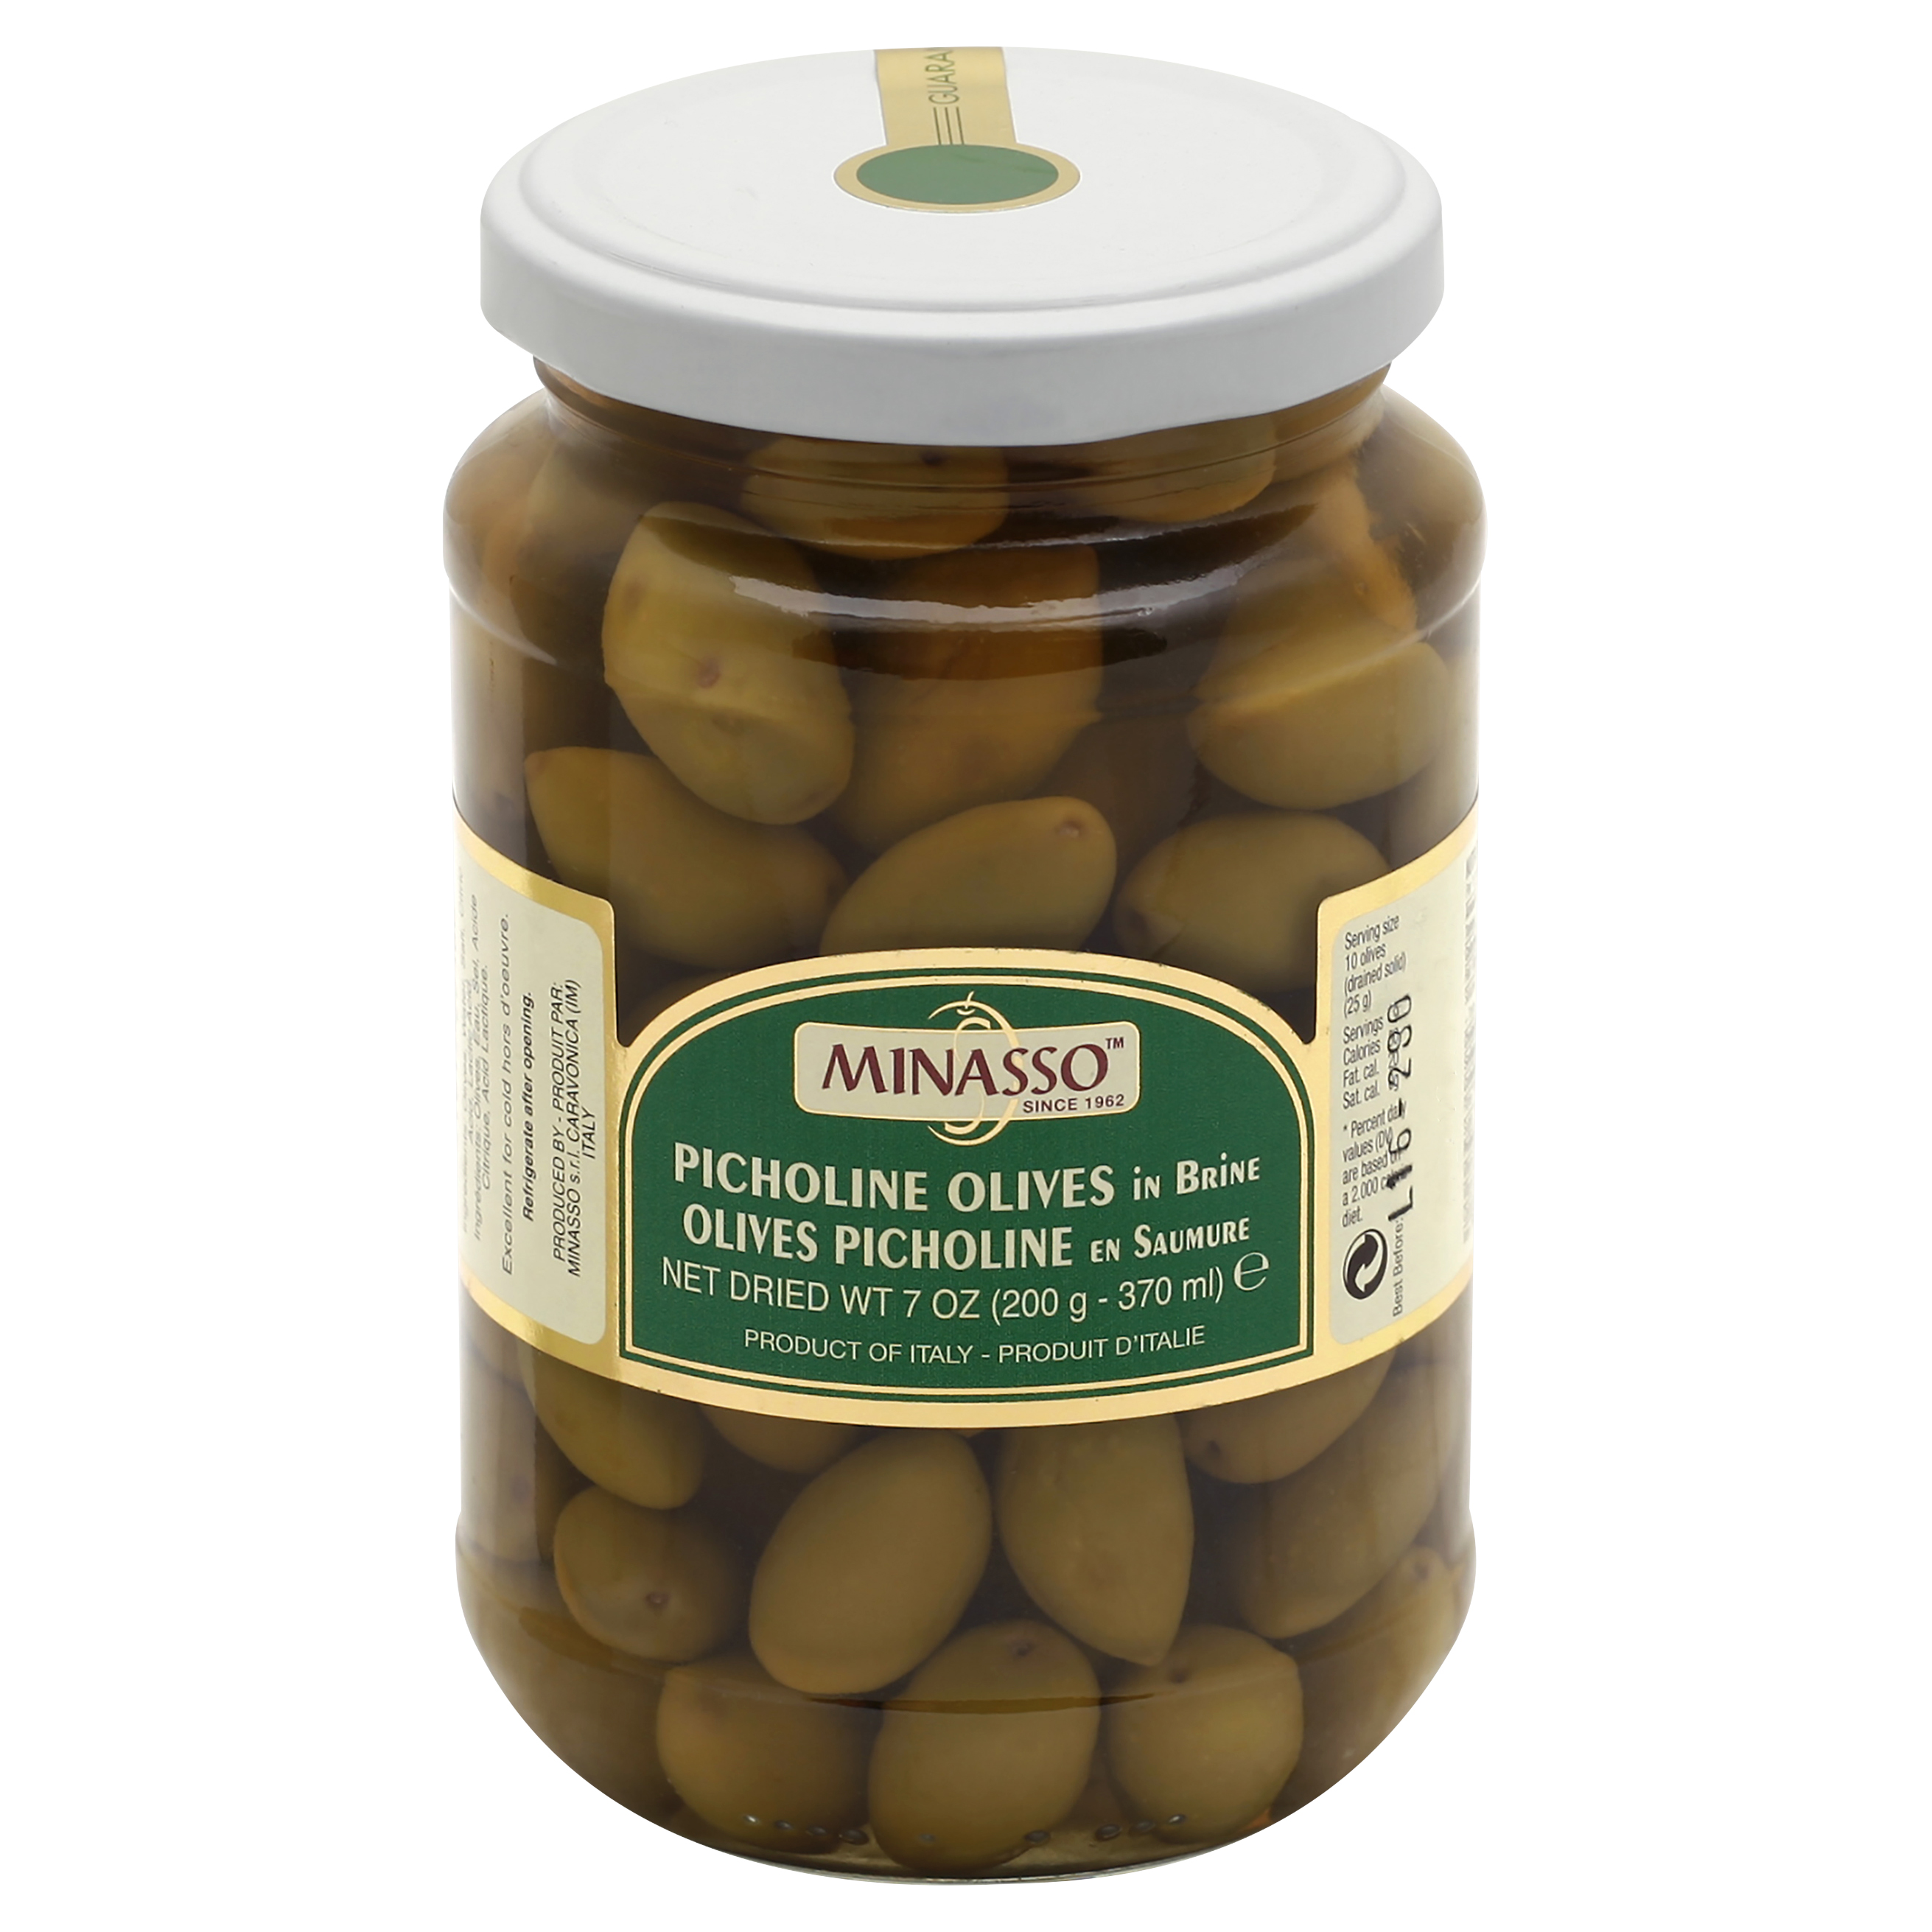 Minasso Picholine Olives 7 Oz